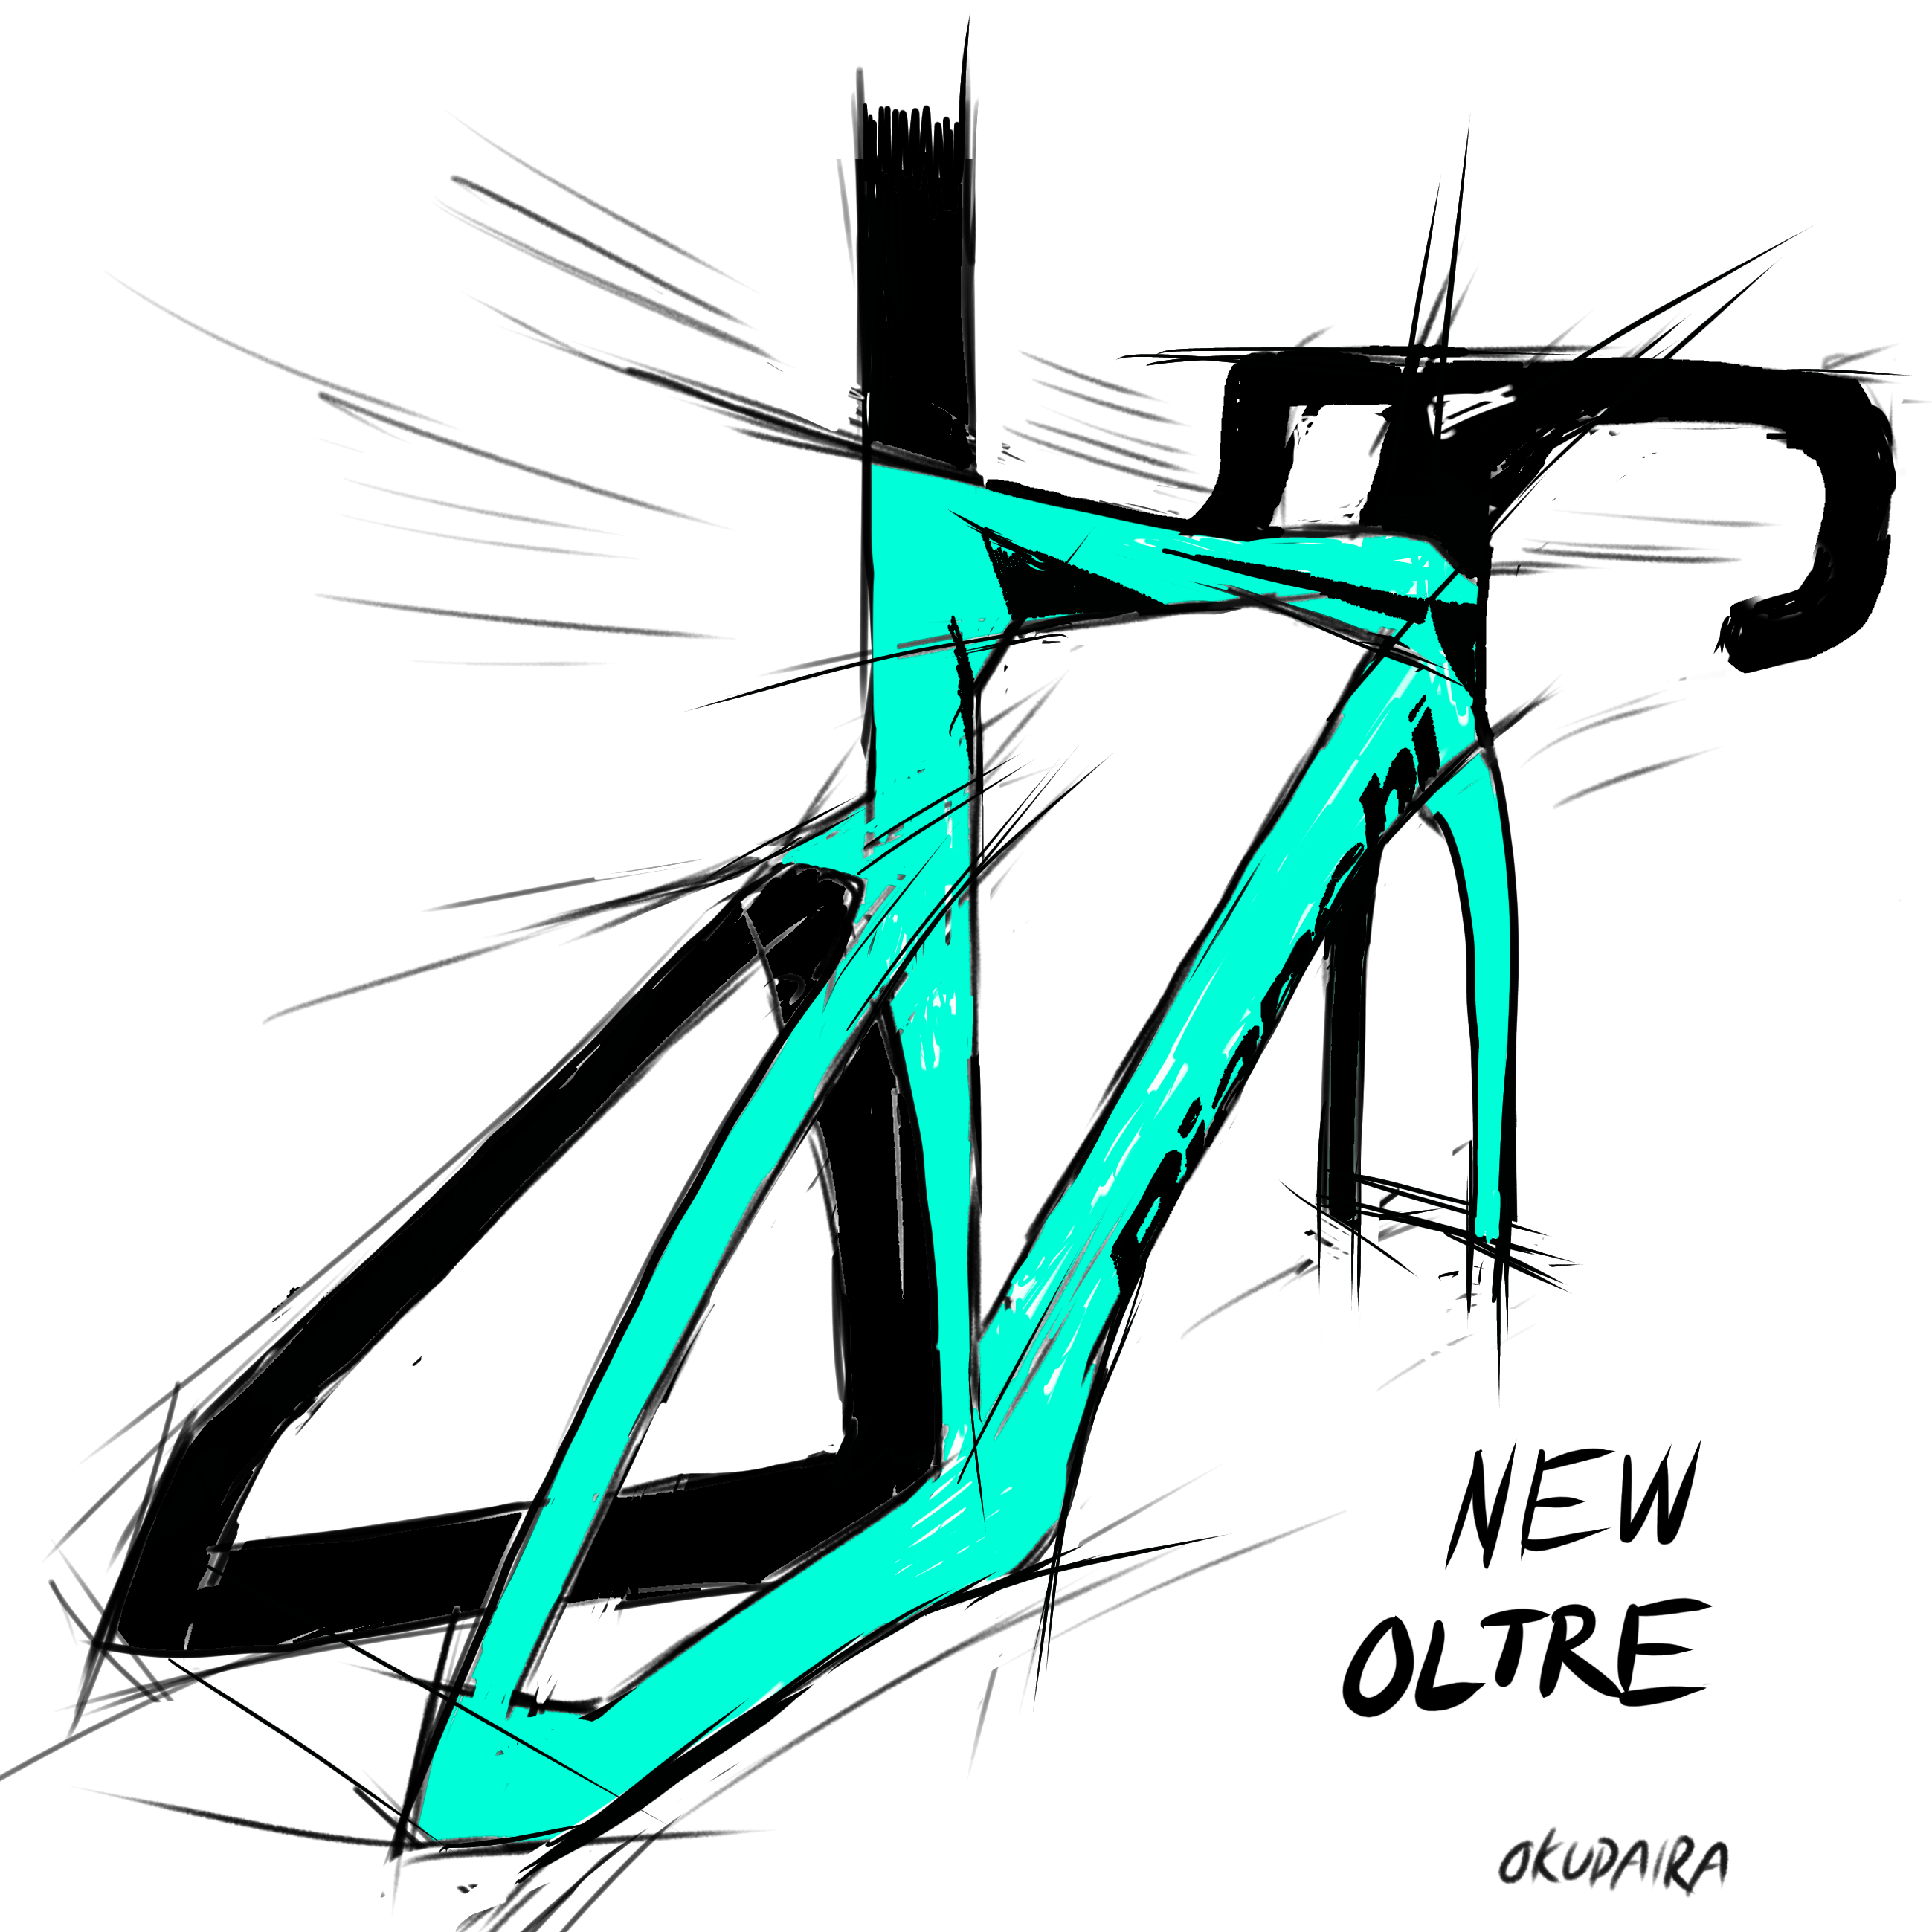 【Bianchi】異形のエアロロード新型OLTRE デザインから考えてみた ＋ インプレッション | 川崎で自転車をお探しならY's Road 川崎店